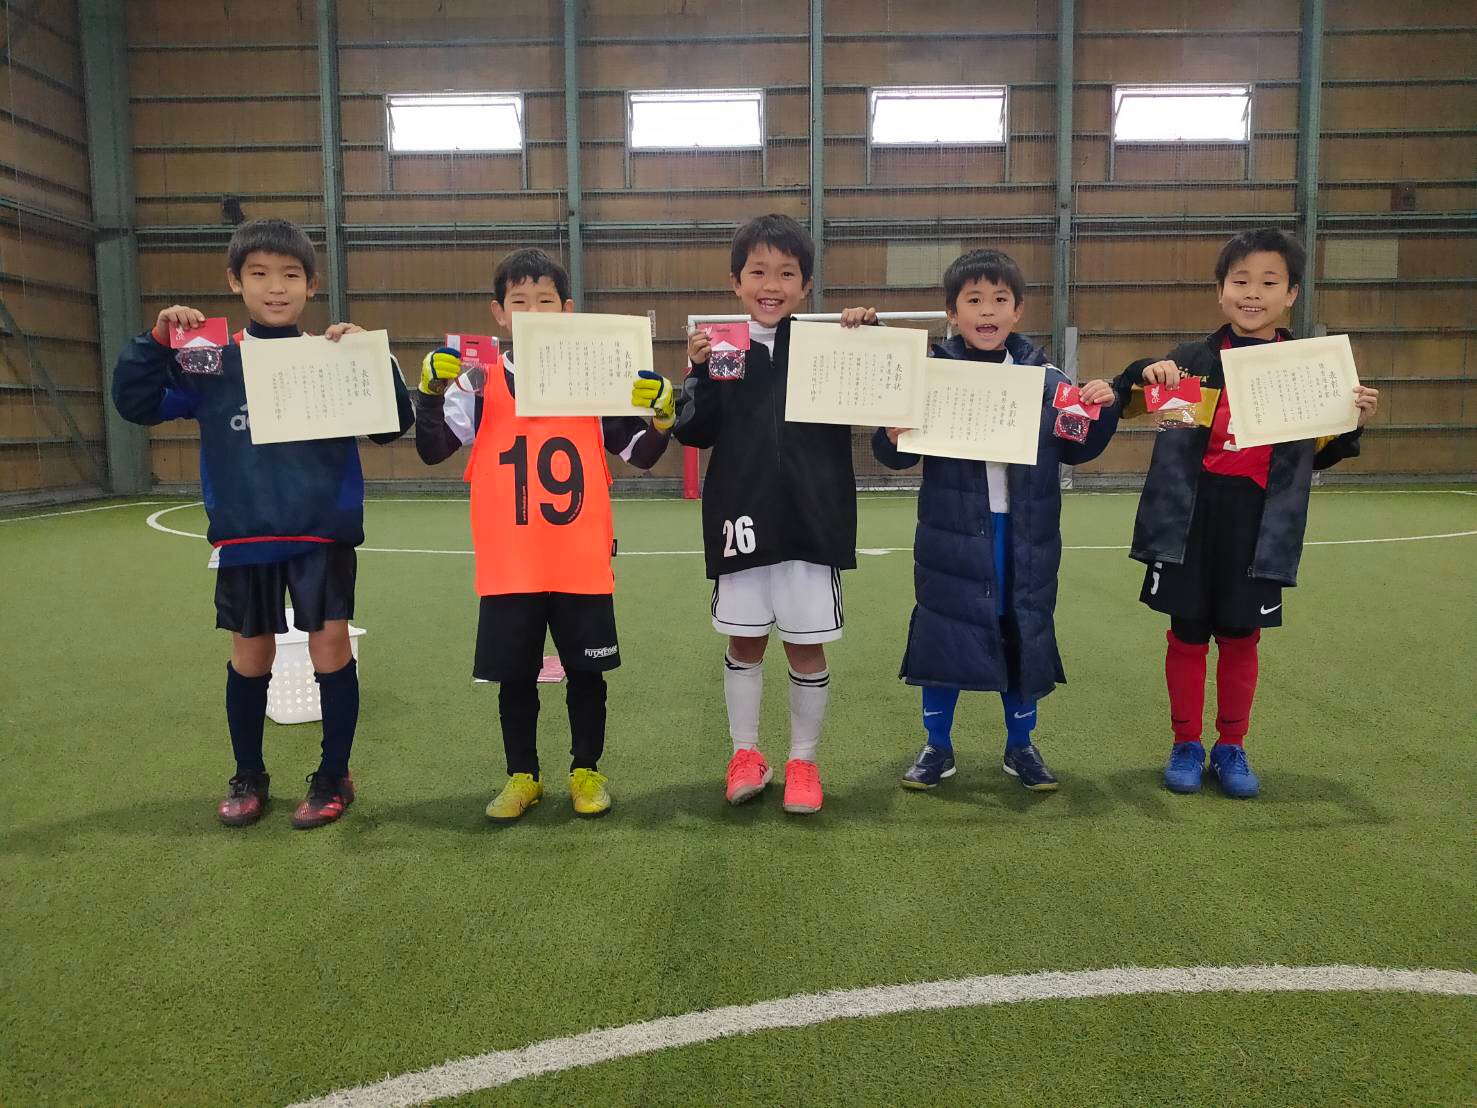 3月7日 日 Grandecup U 8開催しました 埼玉県志木市のインドアフットサル施設 エフボックス フットサルパーク秋ヶ瀬